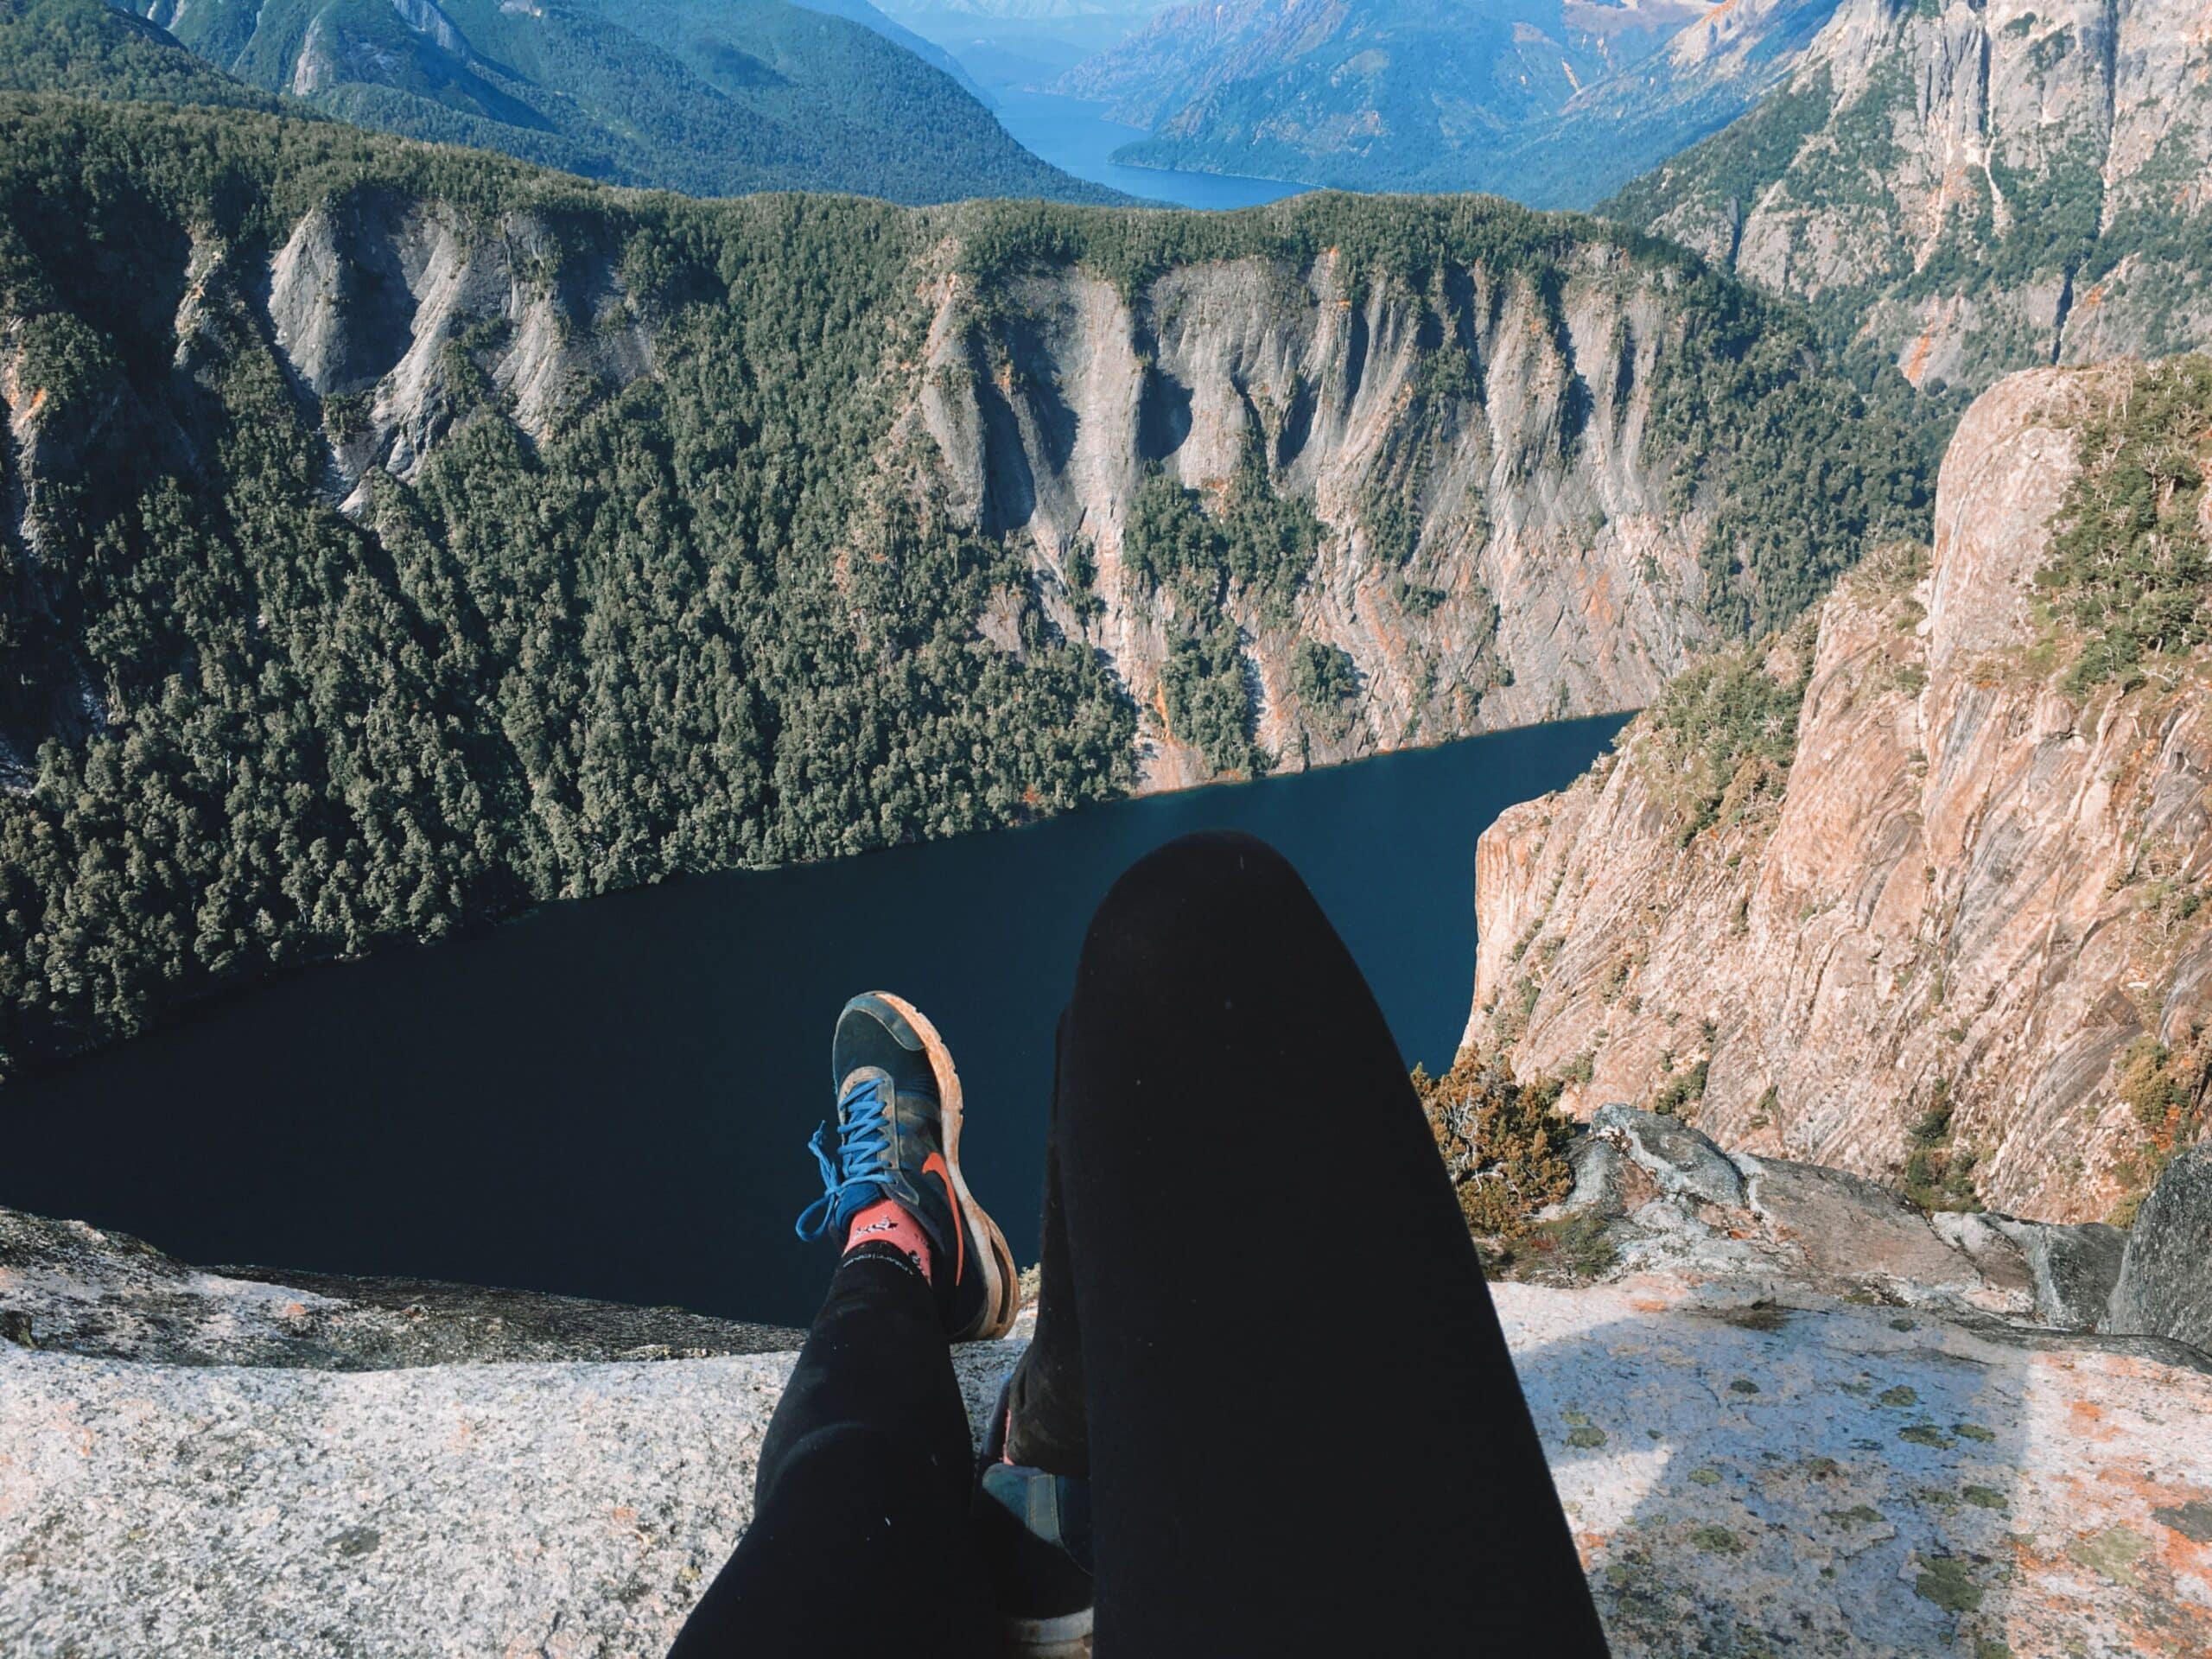 paisagem das montanhas em um vale de Bariloche com o rio Negro visto mais a frente. Próximo a câmera é possível enxergar duas pernas femininas com calça legging preta e tênis de trekking esticadas sobre a rocha